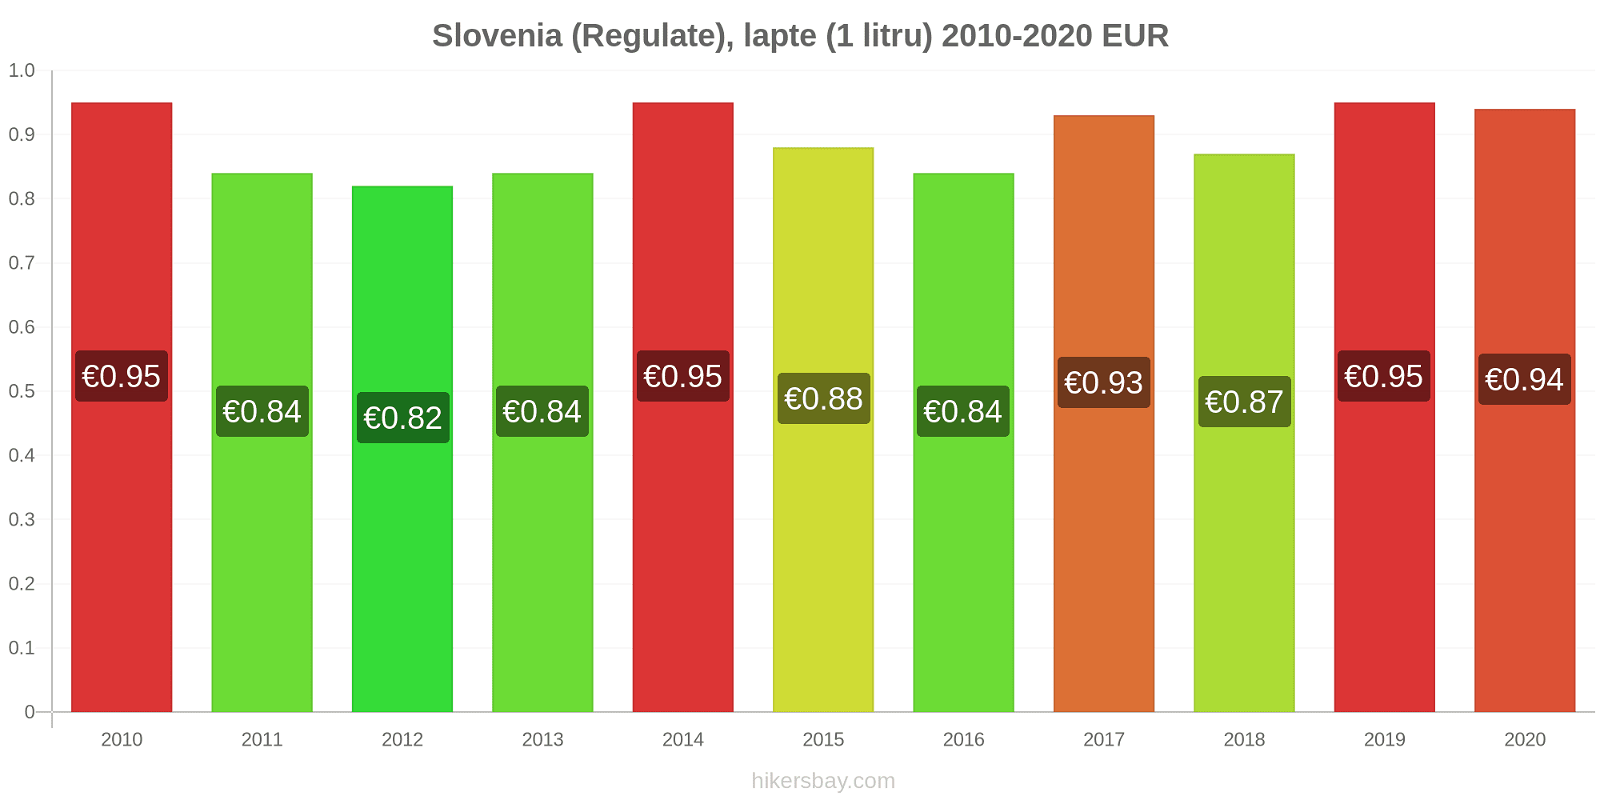 Slovenia modificări de preț (Regulate), lapte (1 litru) hikersbay.com